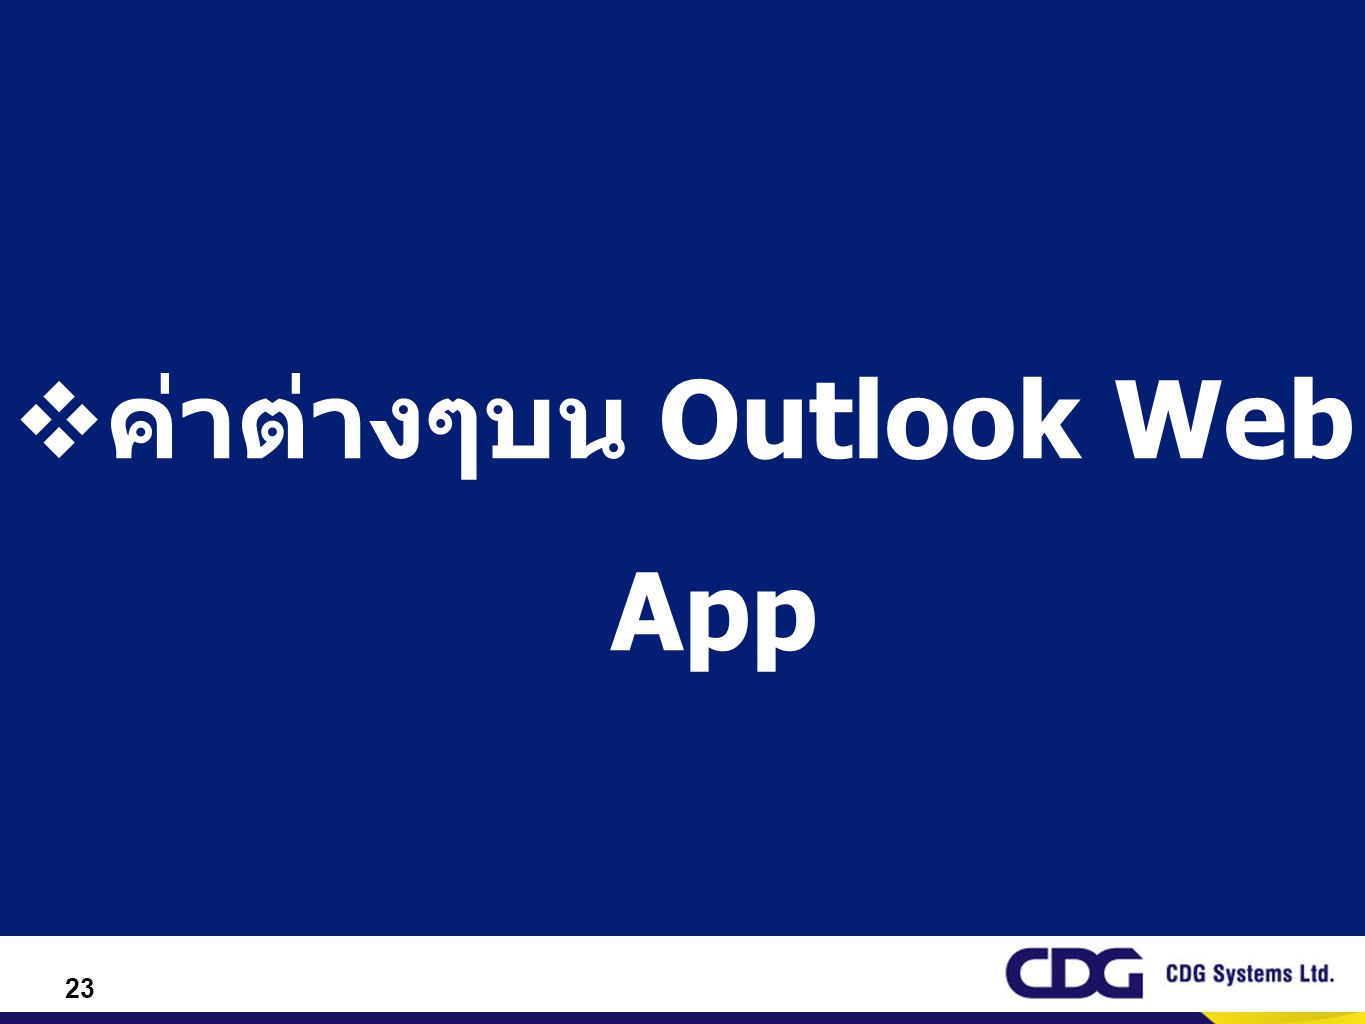 ค่าต่างๆบน Outlook Web App